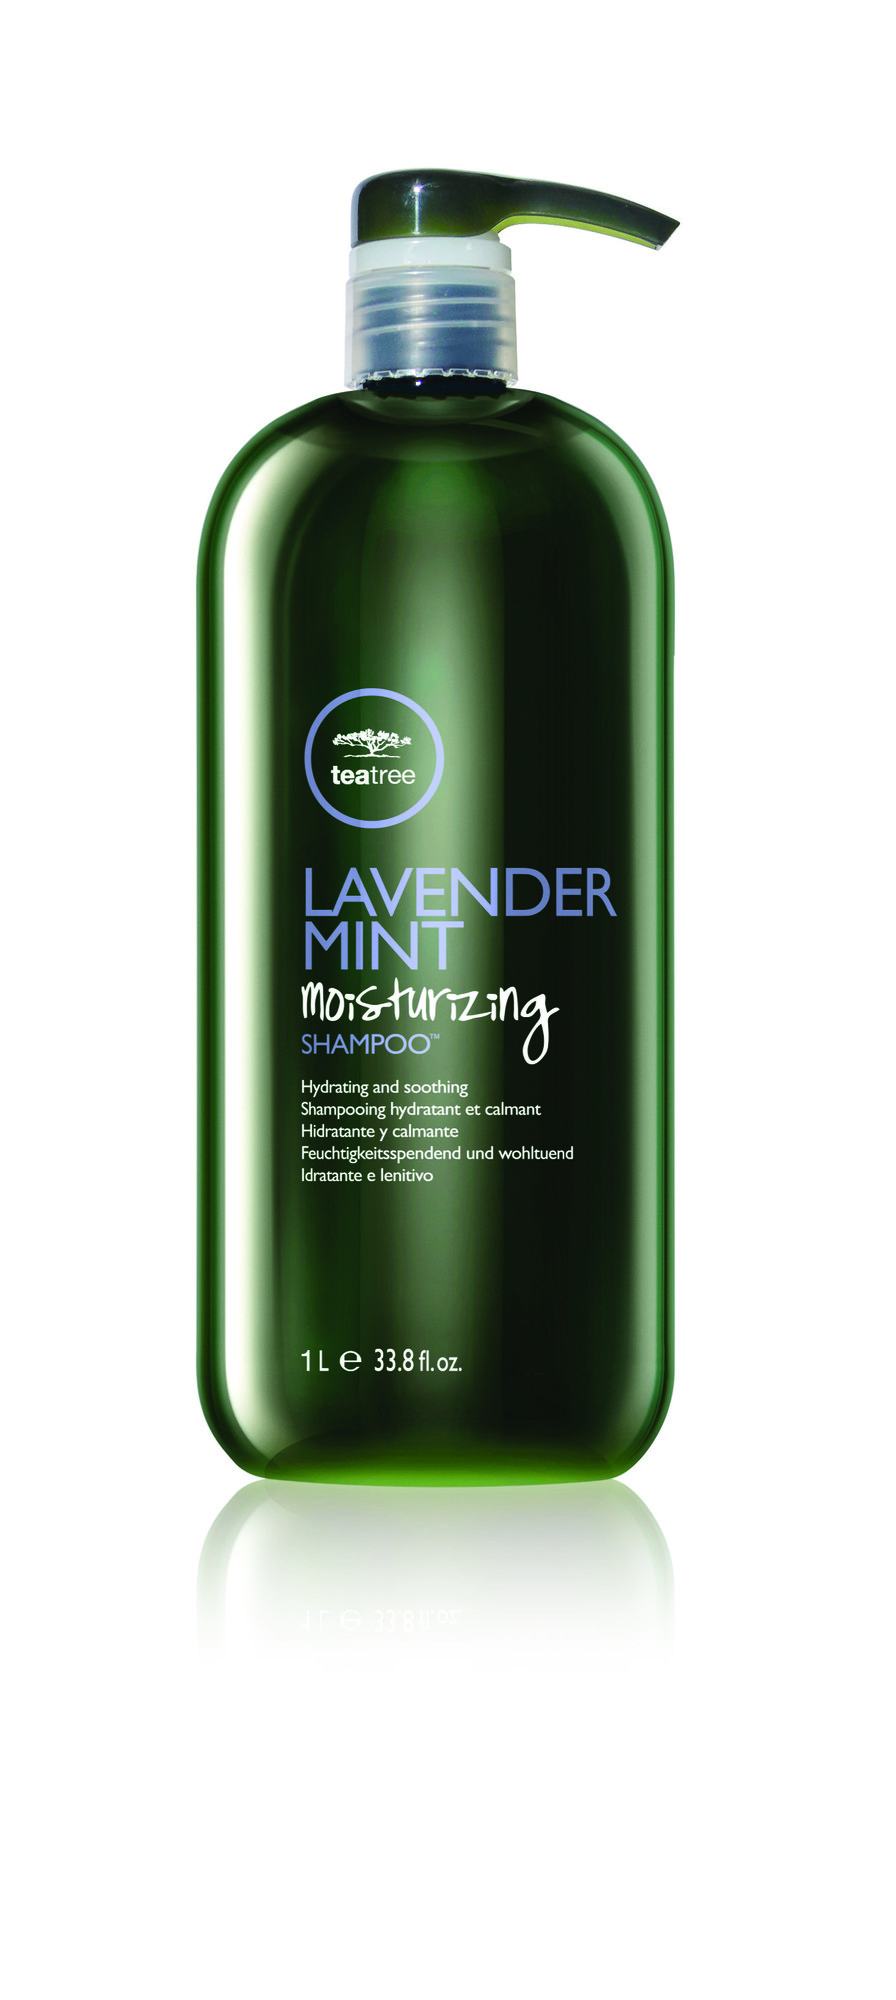 Lavender Mint Moisturizing Shampoo™ obsah (ml): 1000ml